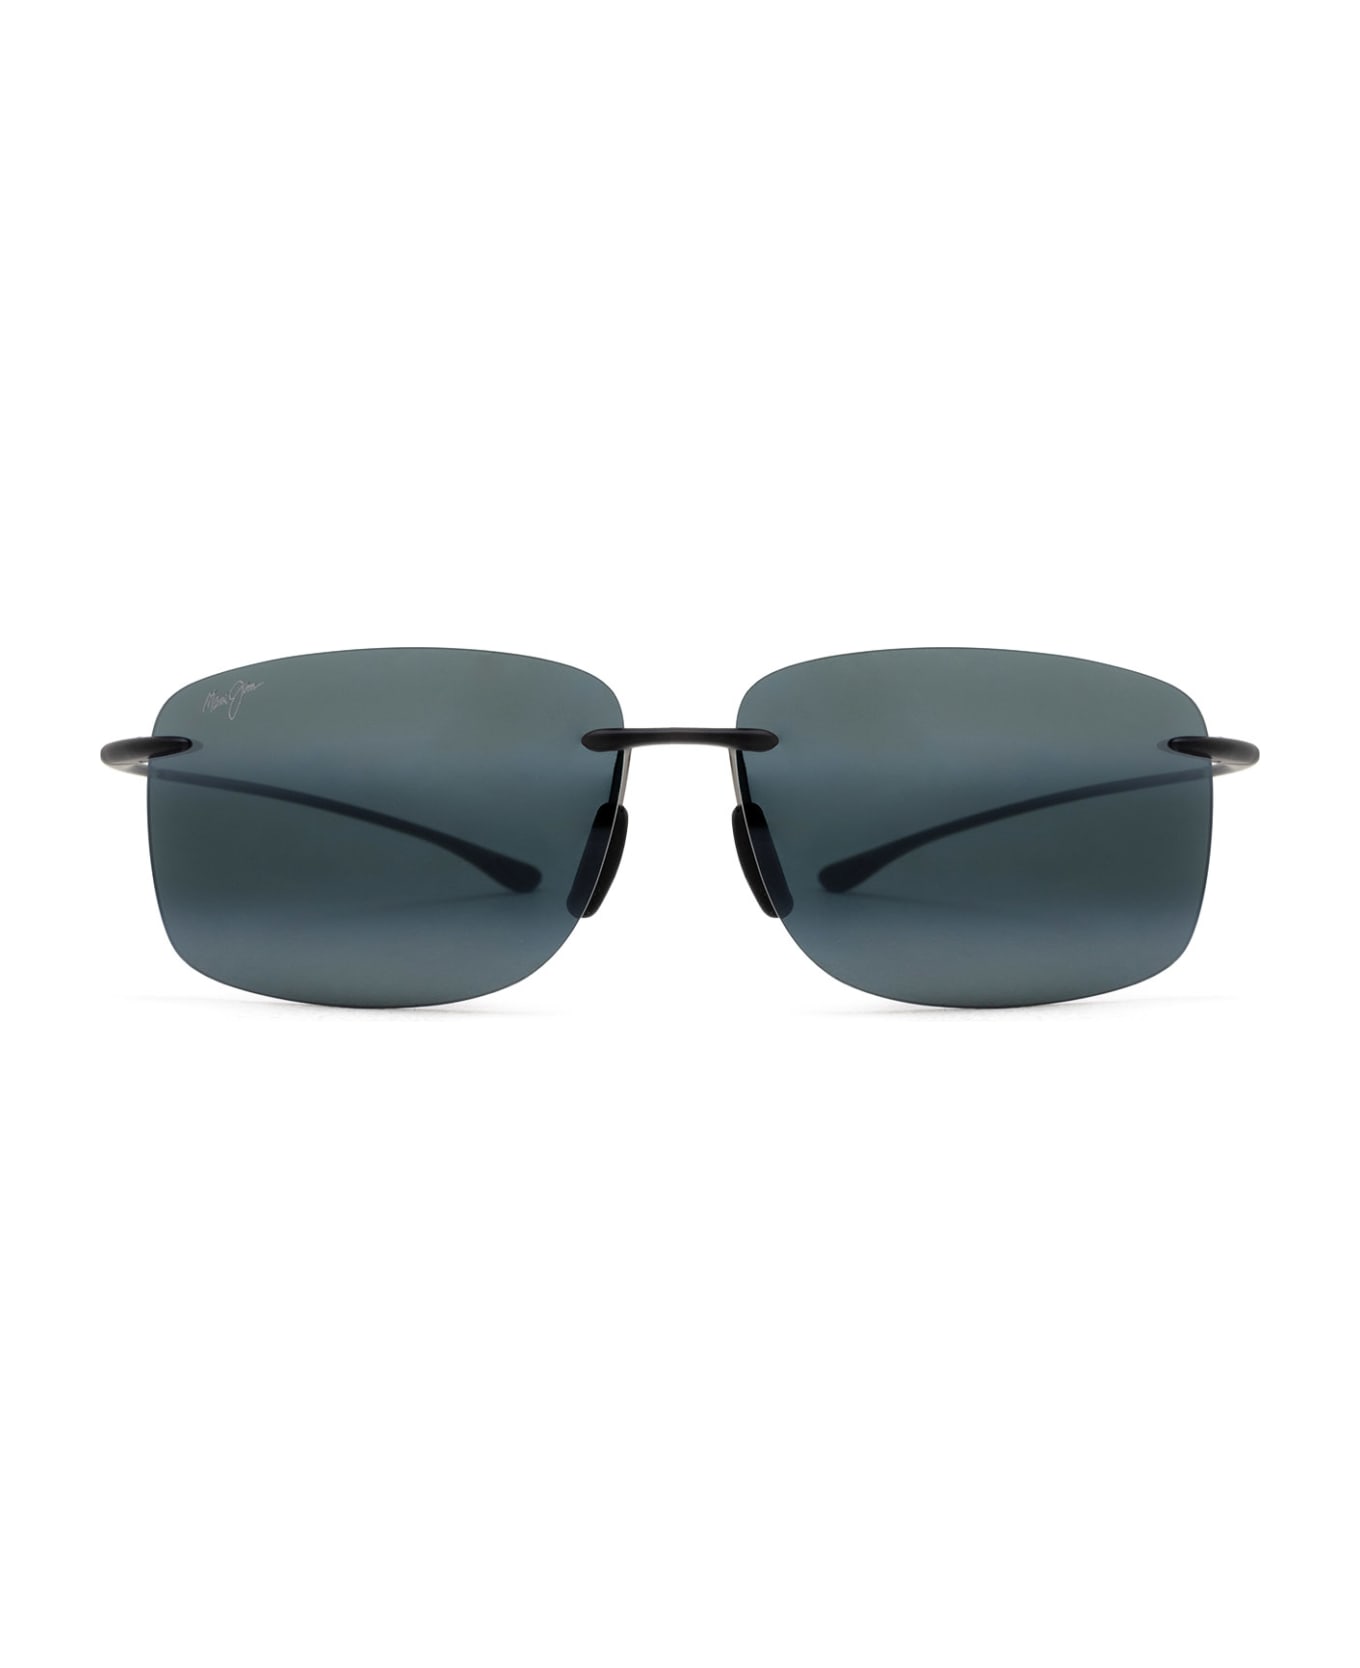 Maui Jim Mj443 Grey Matte Sunglasses - Grey Matte サングラス